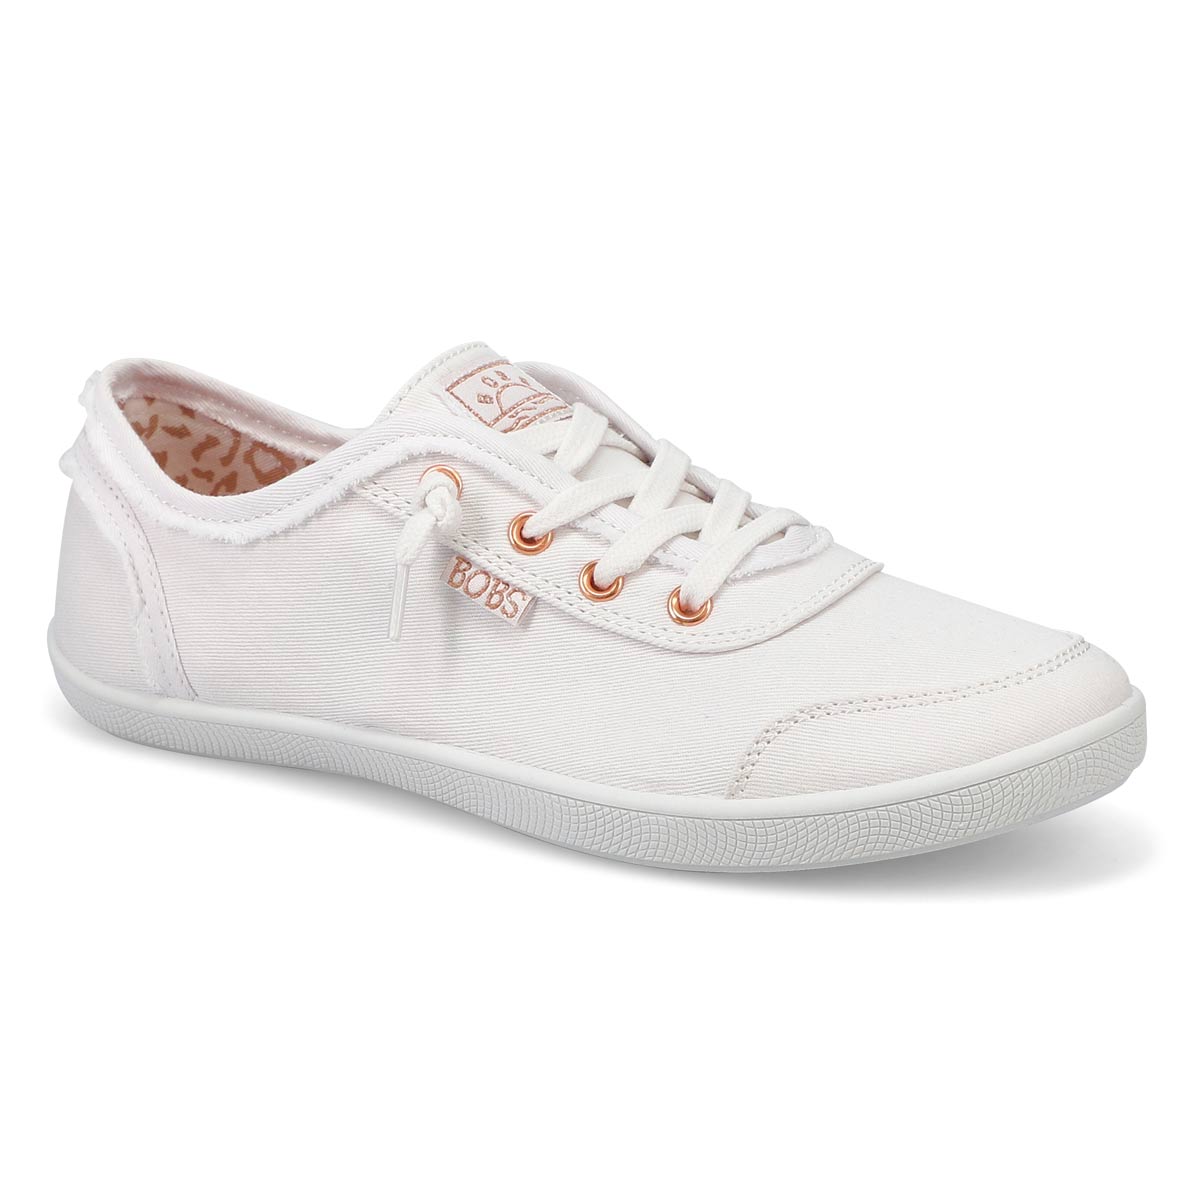 Womens' Bobs B Cute Slip On Sneaker - White